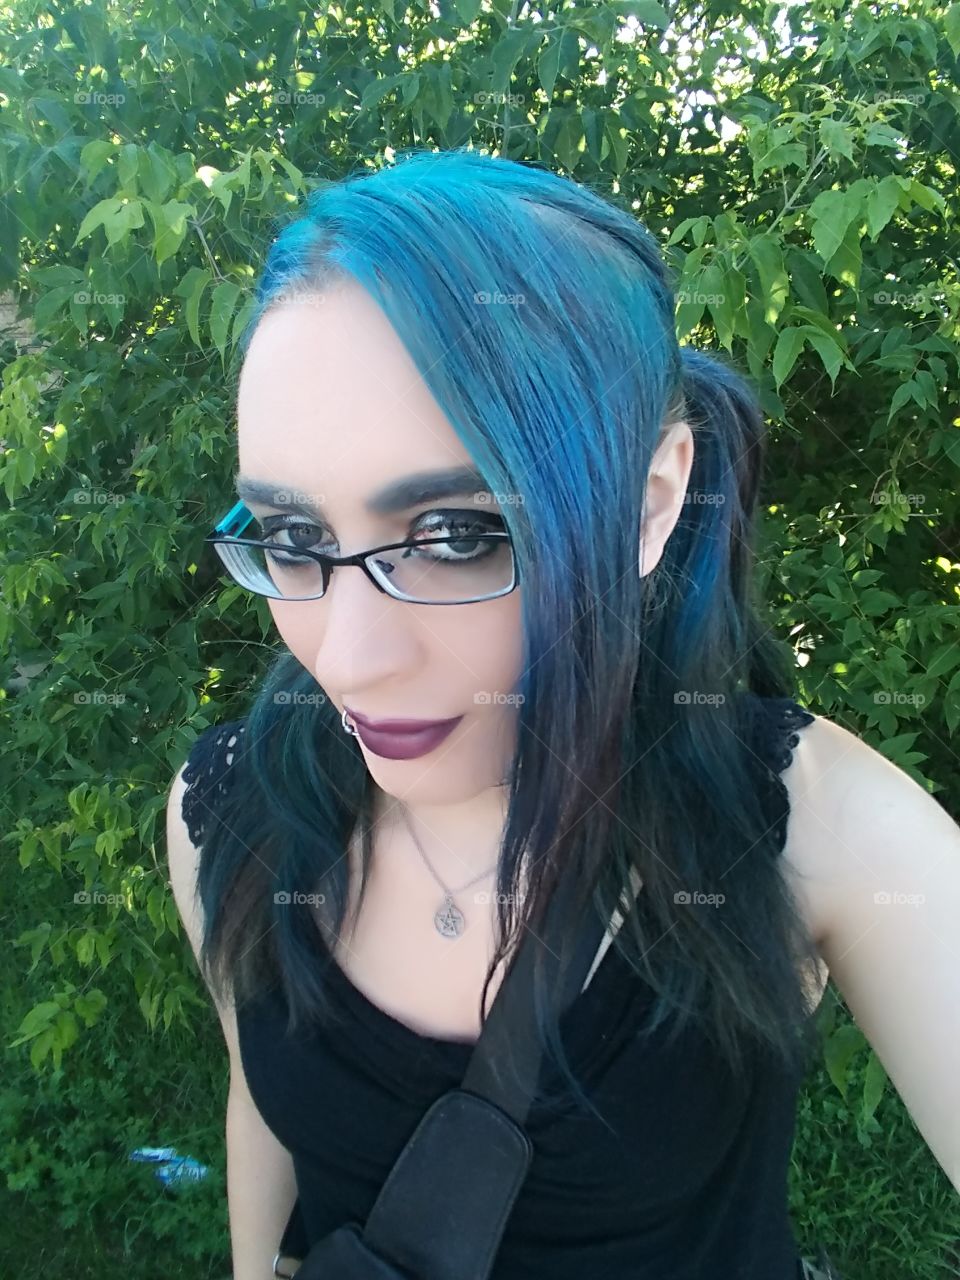 blue hair goth girl